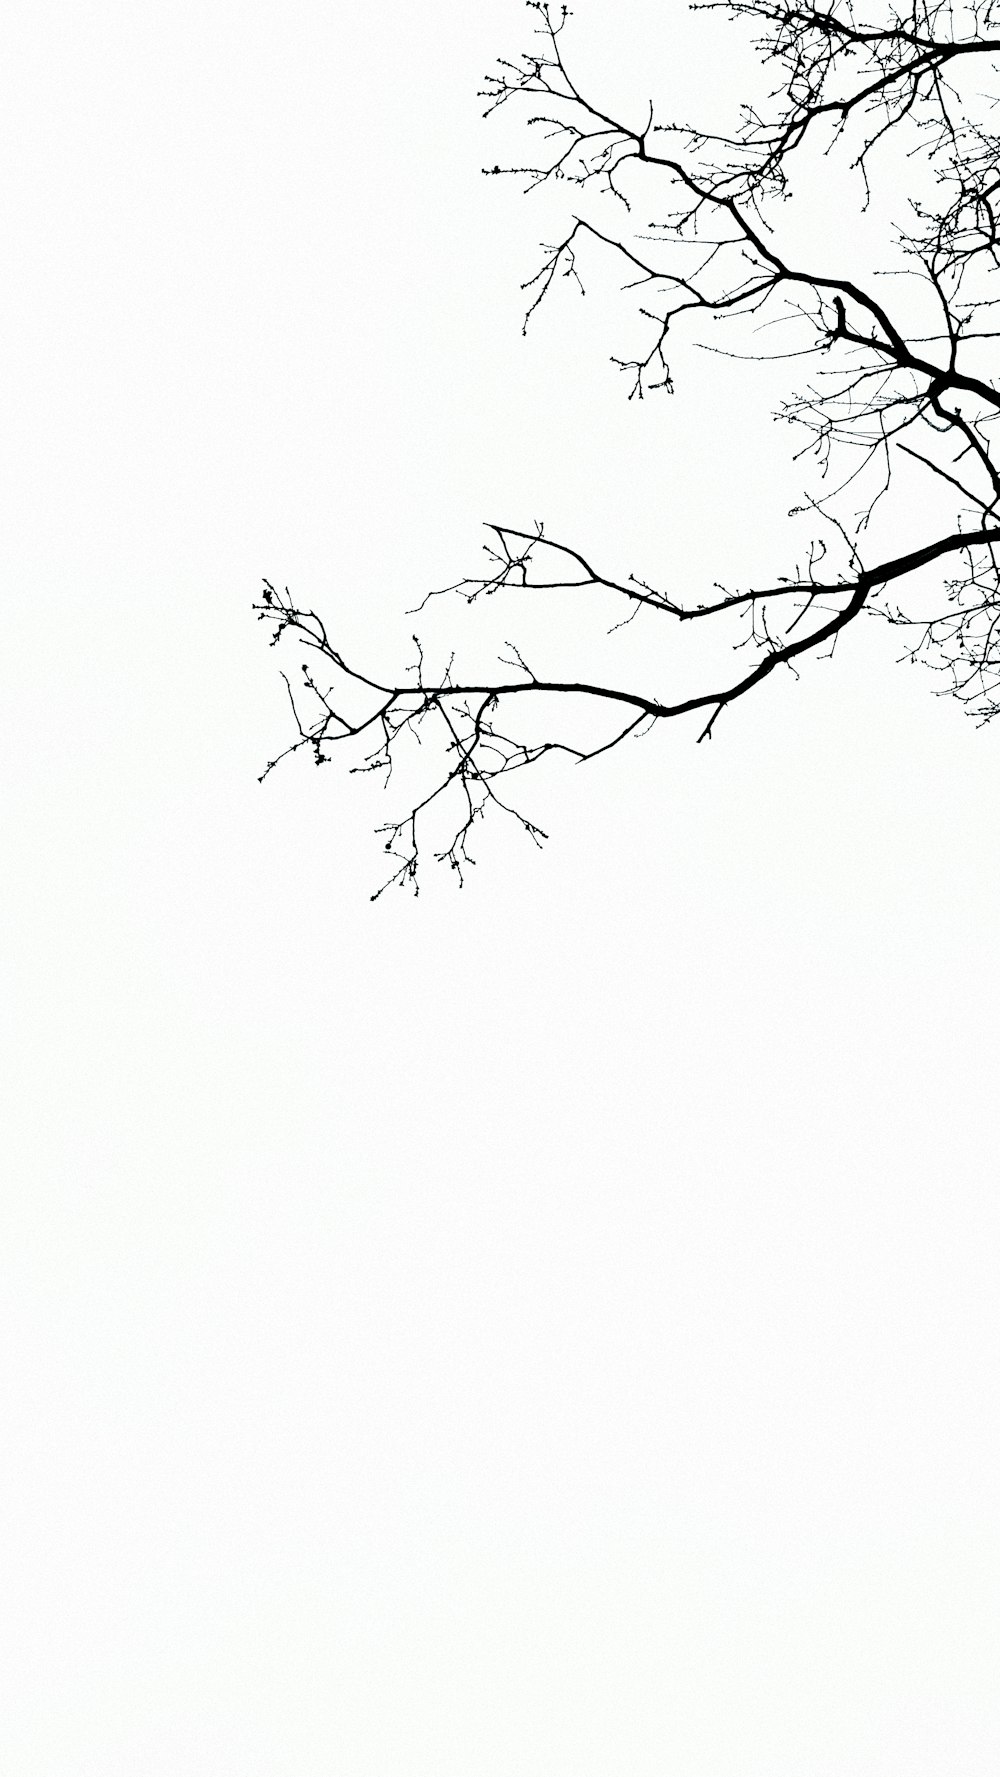 Fotografía de ramas de árboles